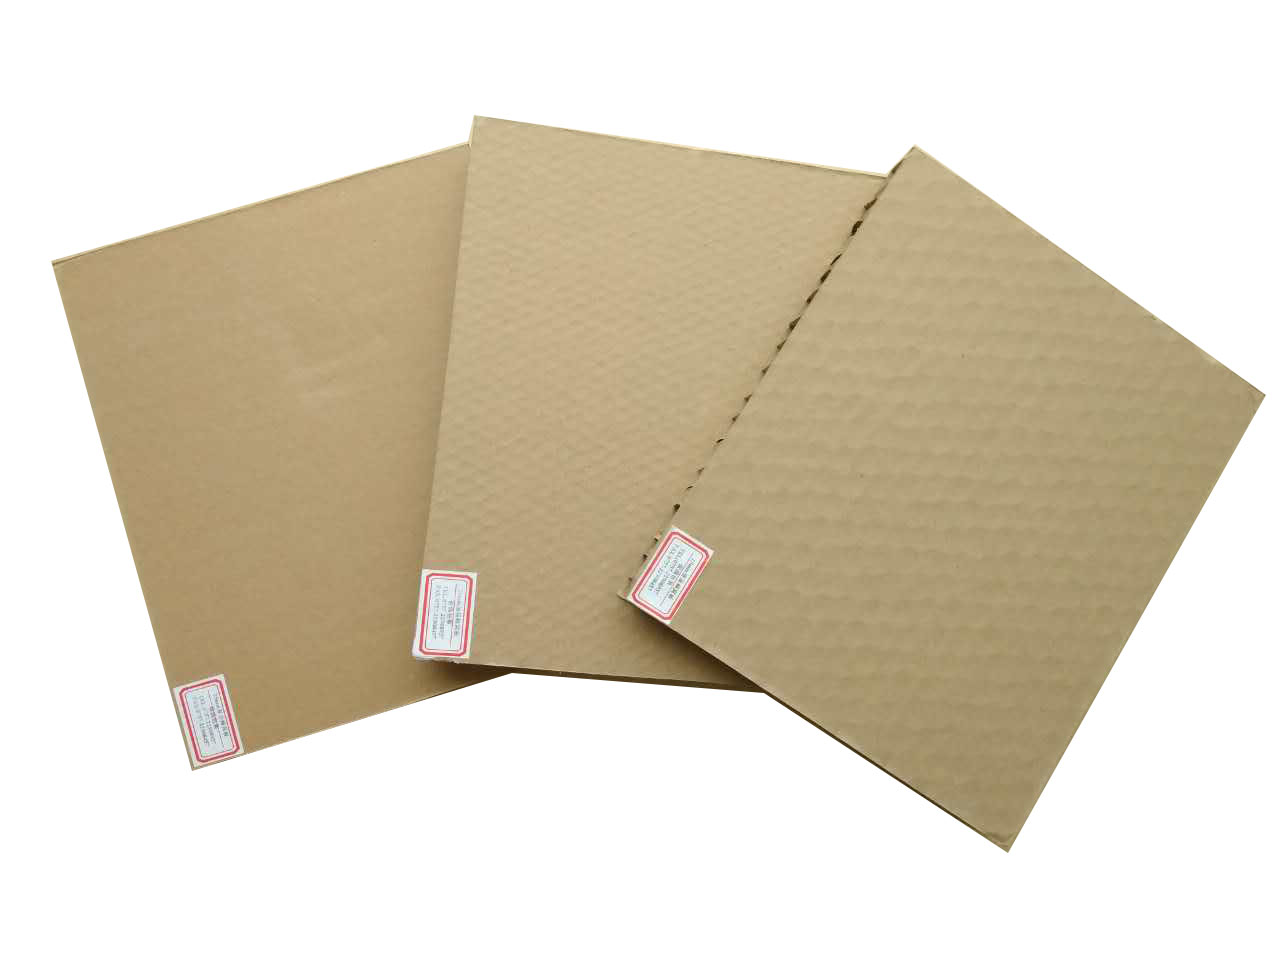 蜂窝纸板蜂窝纸板 蜂窝纸板厂家直销 蜂窝纸板采购价格 优质蜂窝纸板